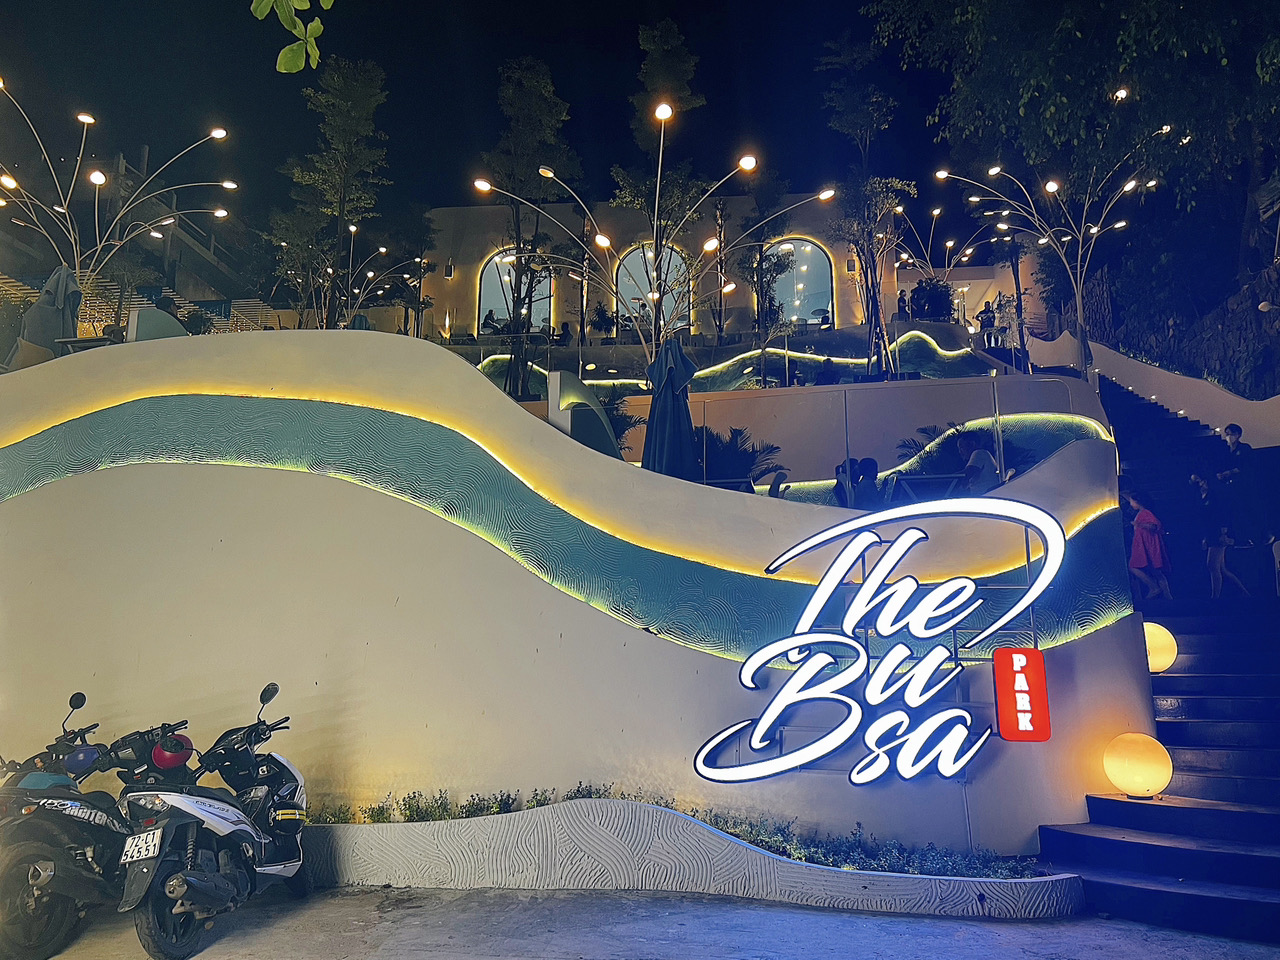 The Busa Park - địa điểm check in hoành tráng, mới toanh tại Vũng Tàu, có gì hot?